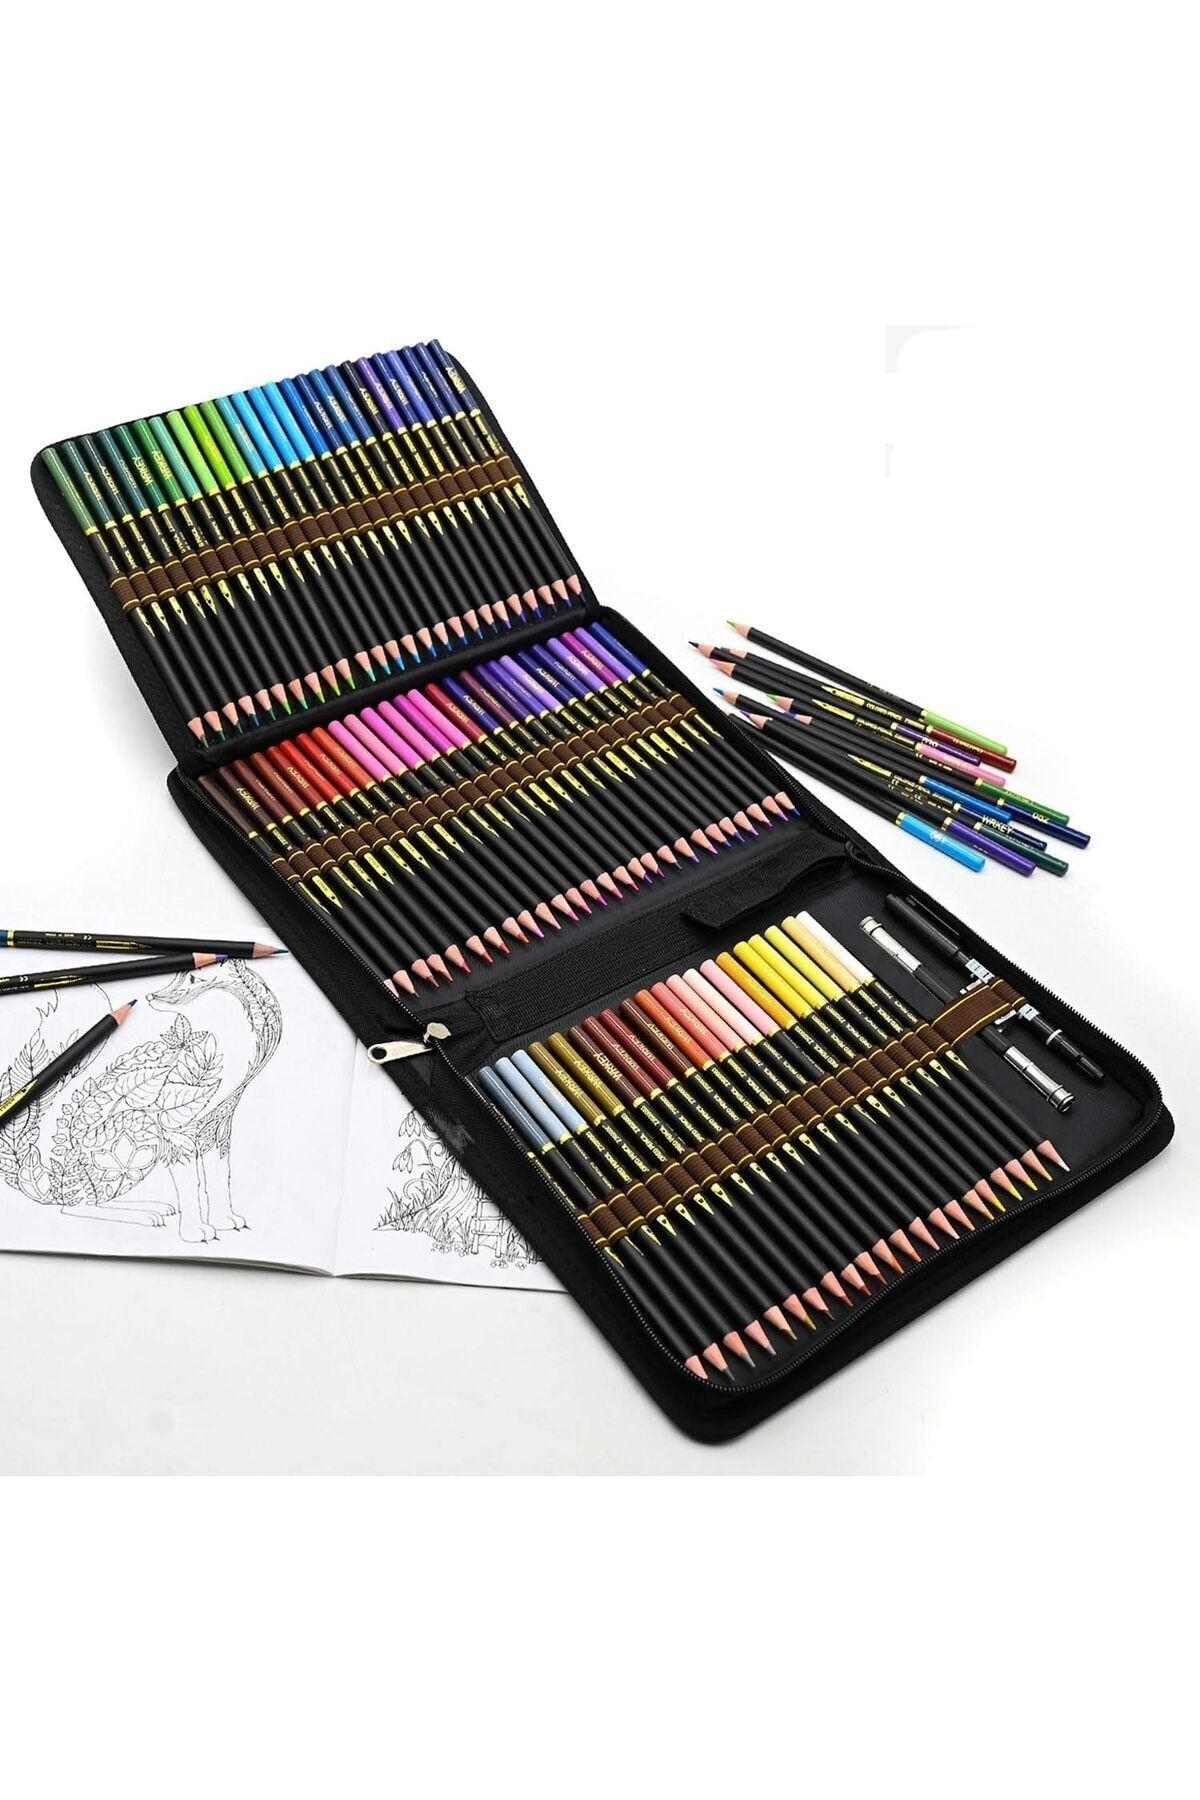 LUPPER Renkli kalem seti, 72 kurşun kalem, profesyonel boya kalemi, boyama kitabı, yetişkin , çocukl